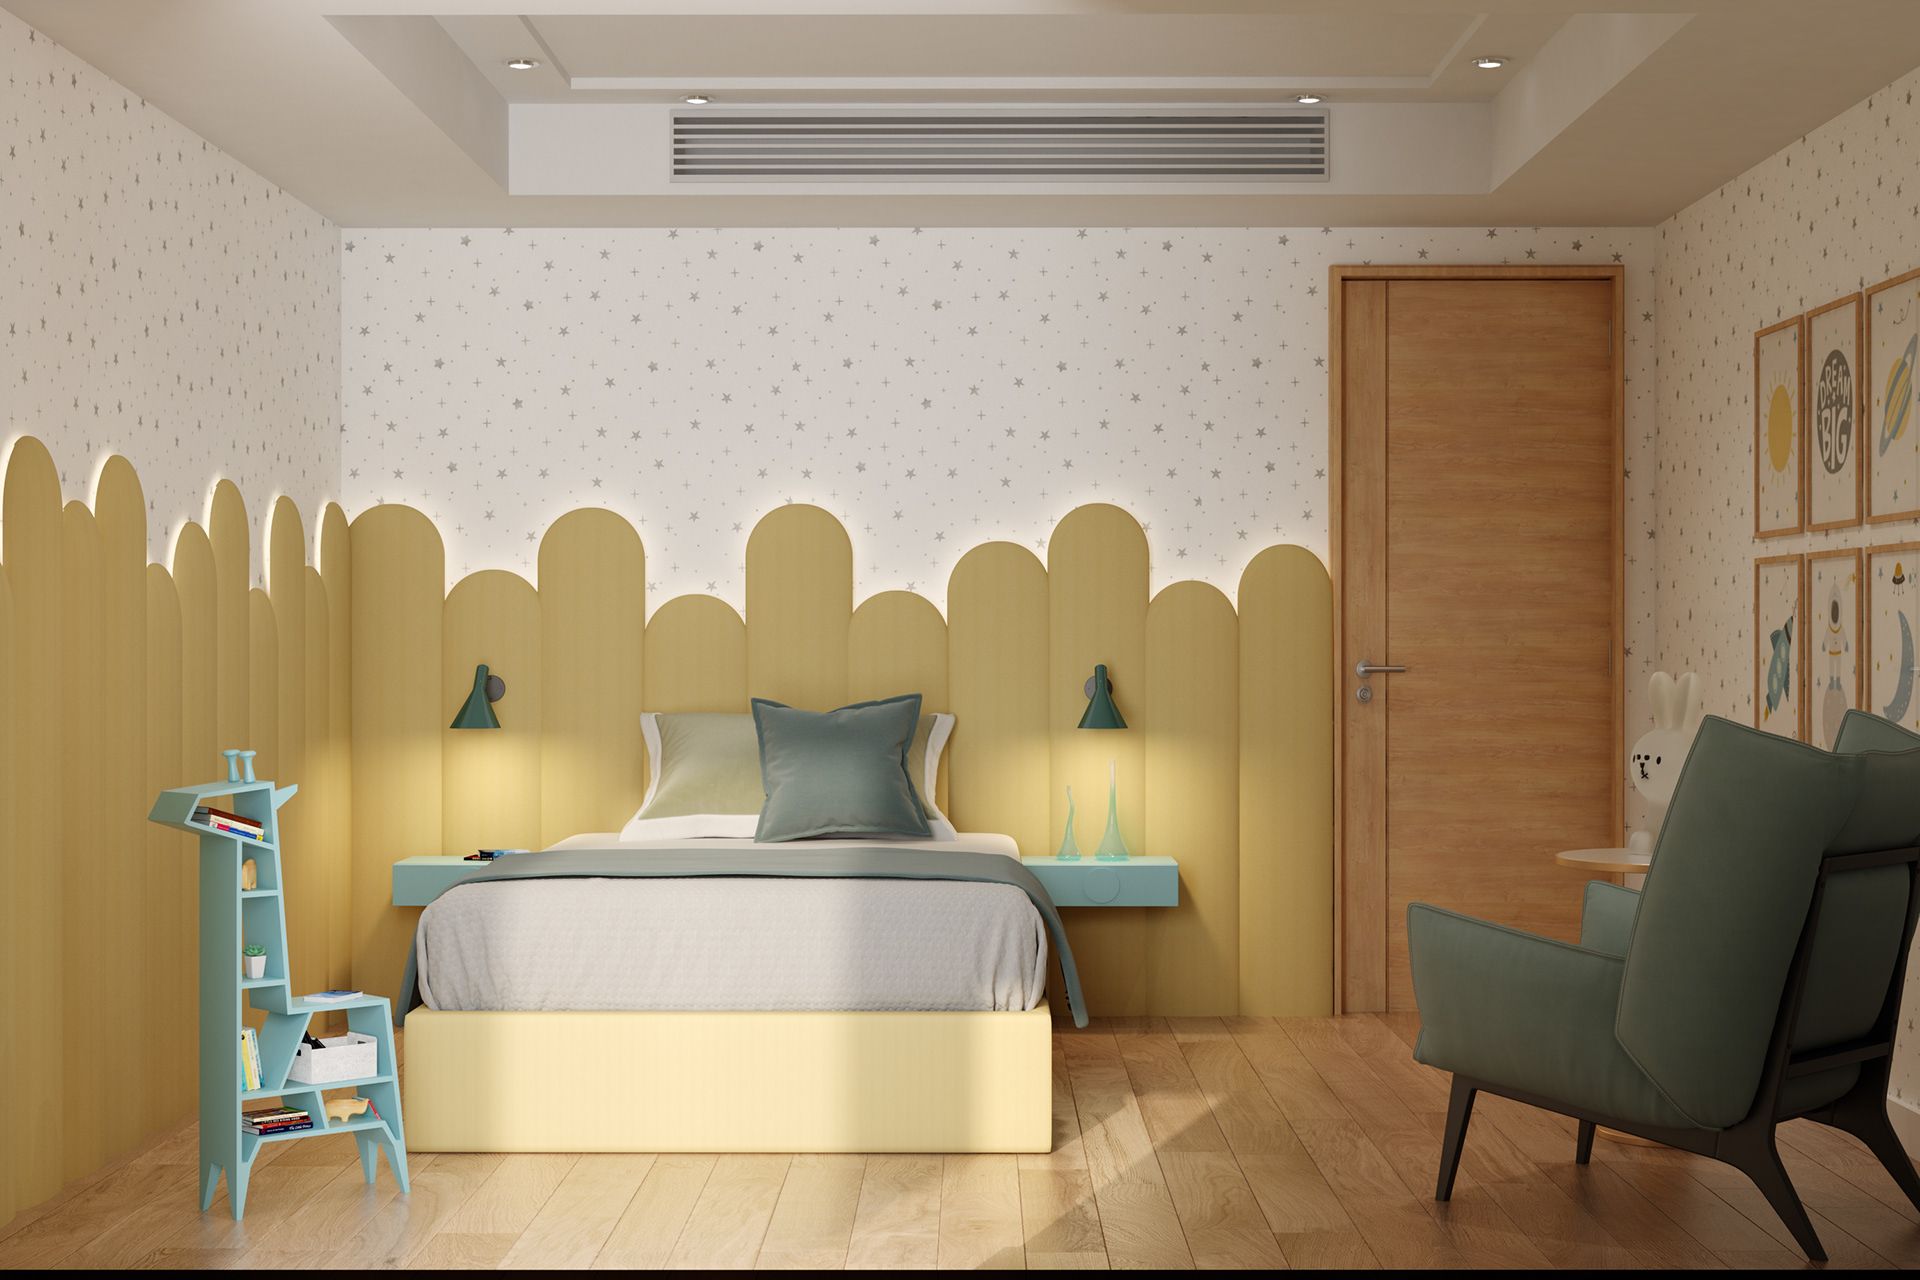 Lựa chọn phong cách thiết kế phù hợp cho phòng ngủ